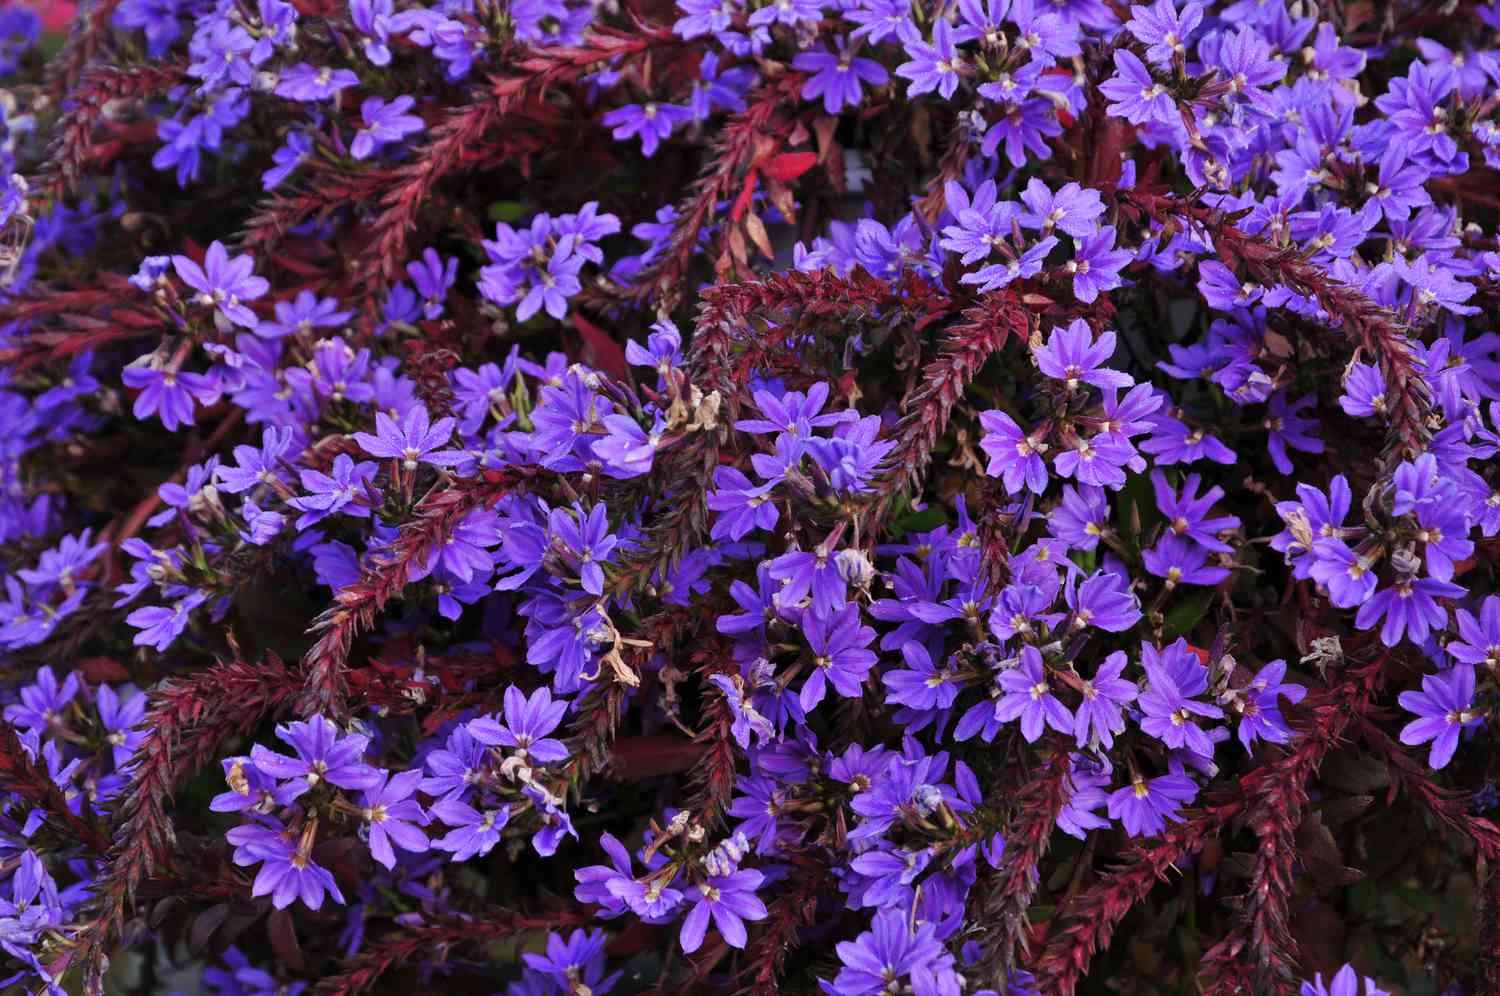 Scaevola-Pflanze mit dunkelroten Hüllblättern und hellvioletten Blüten